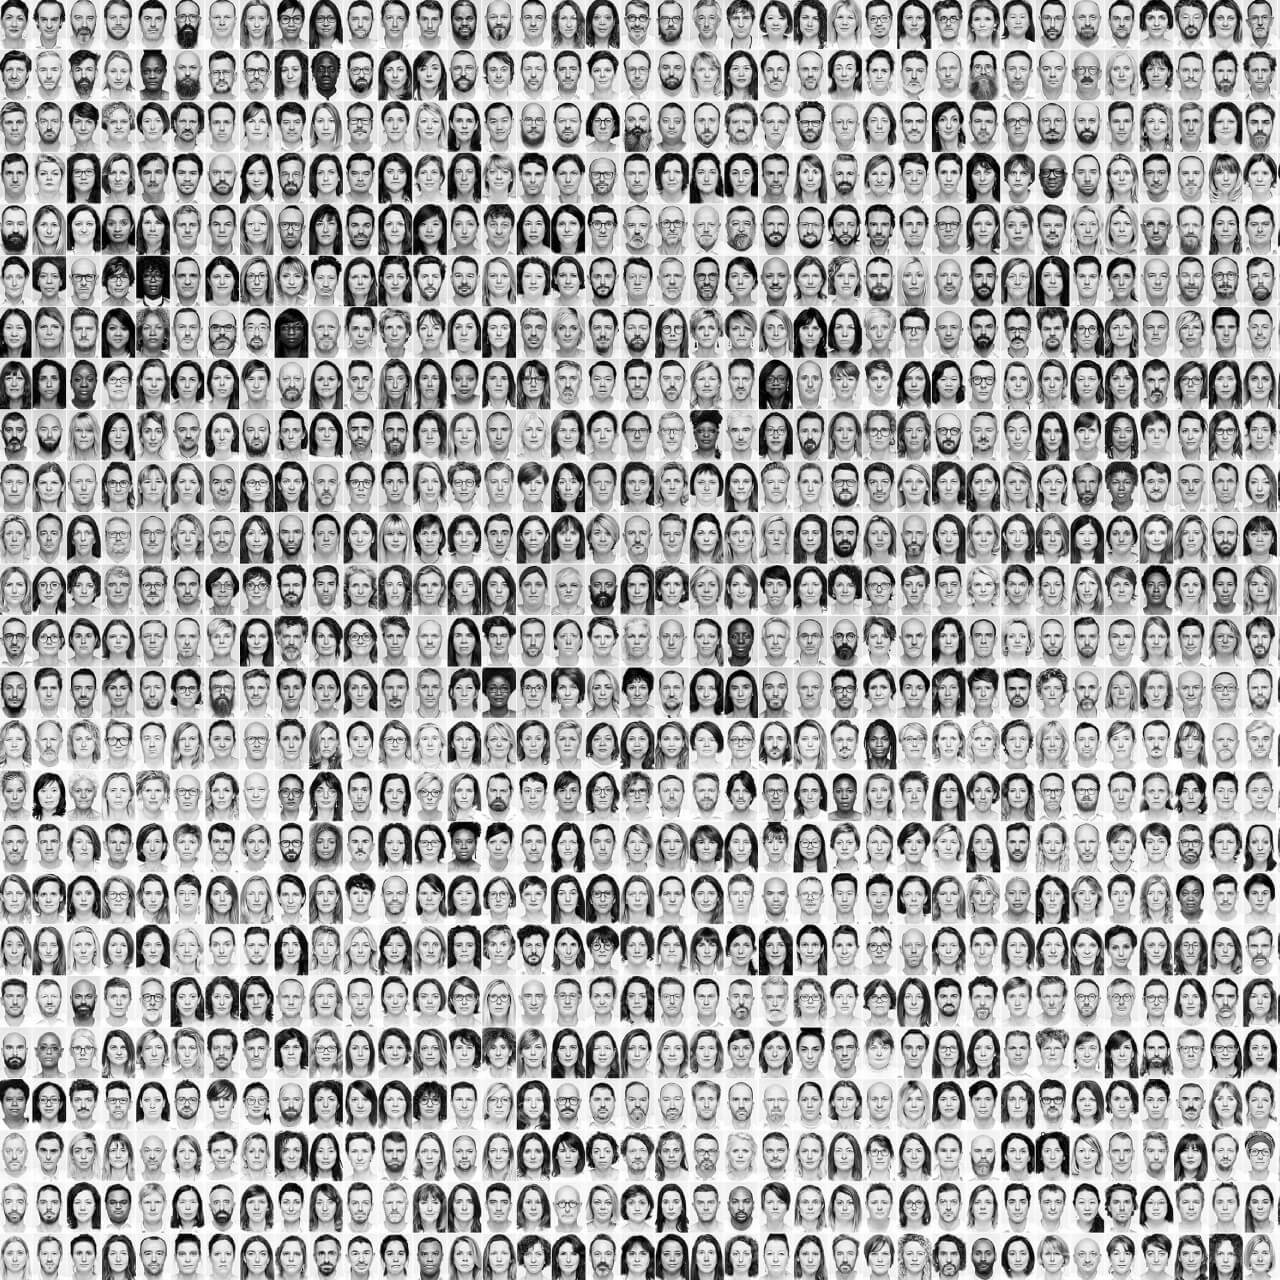 Mosaïque photographique de 1000 hommes barbus par Olivier Vinot, chaque visage offrant une perspective unique dans un ensemble harmonieux